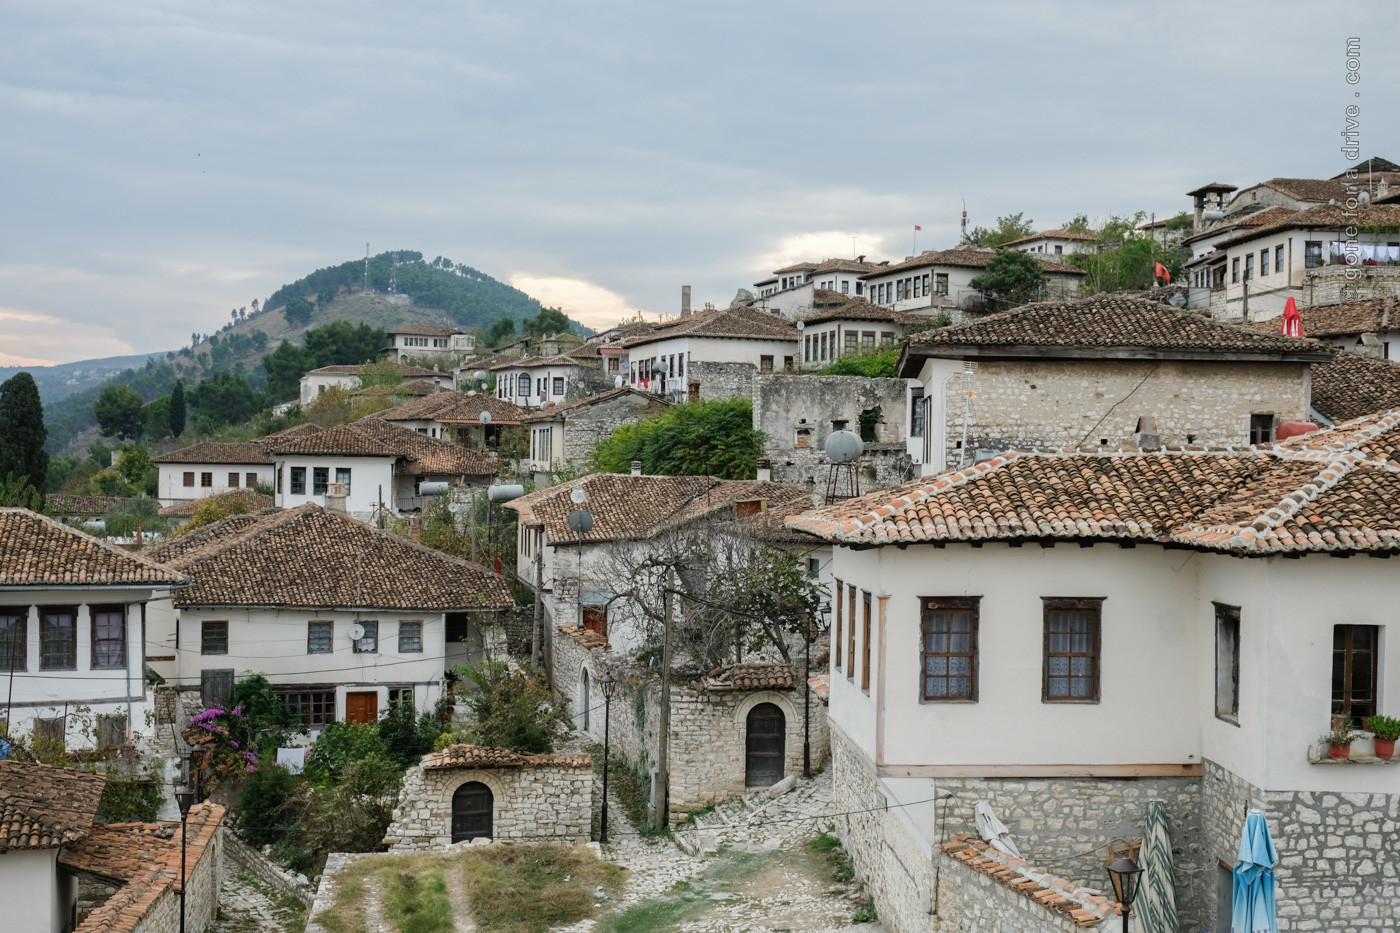 Blick auf die Wohnhäuser der Altstadt von Berat, Albanien.